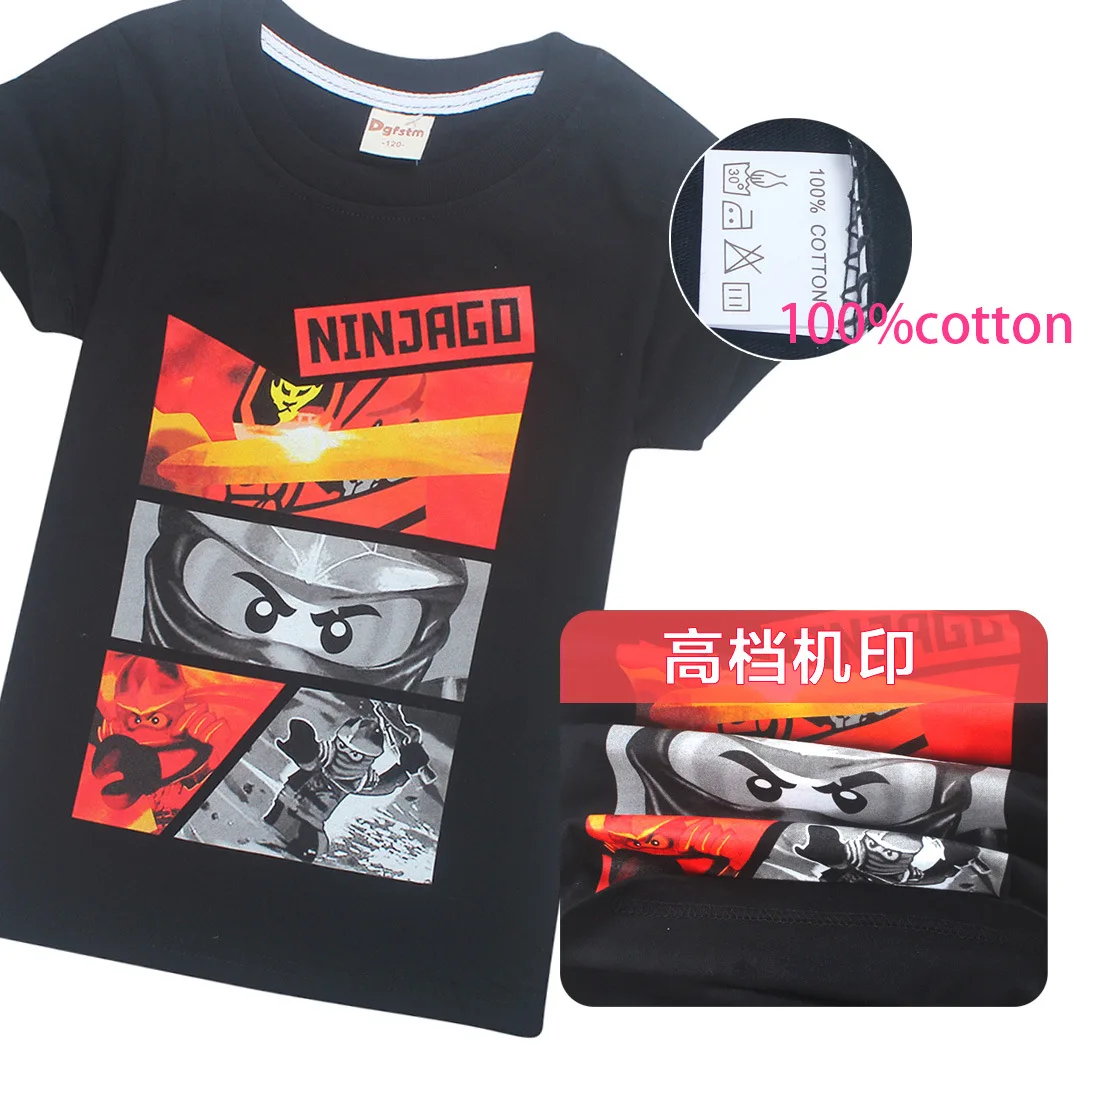 Детская одежда robocar poli Batman ninja одежда Ninjago футболки с принтом героев мультфильмов летние футболки с короткими рукавами для мальчиков